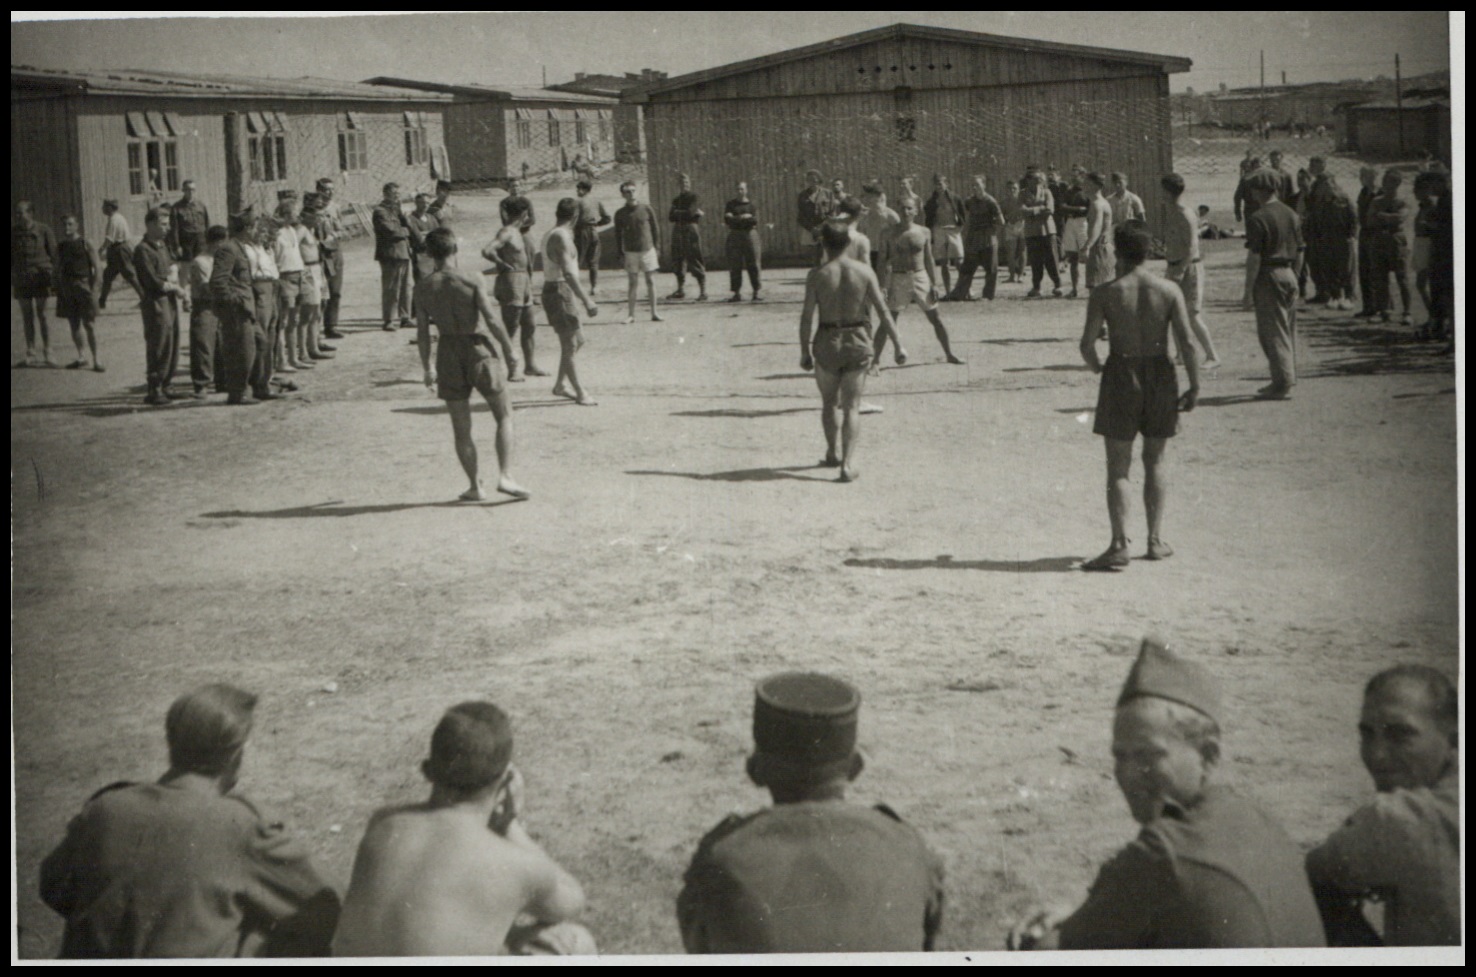 Jeńcy wojenni grający w piłkę nożną, Stalag 369 w Kobierzynie, Kraków, 1942-1944, fot. nieznany (źródło: materiały prasowe organizatora)